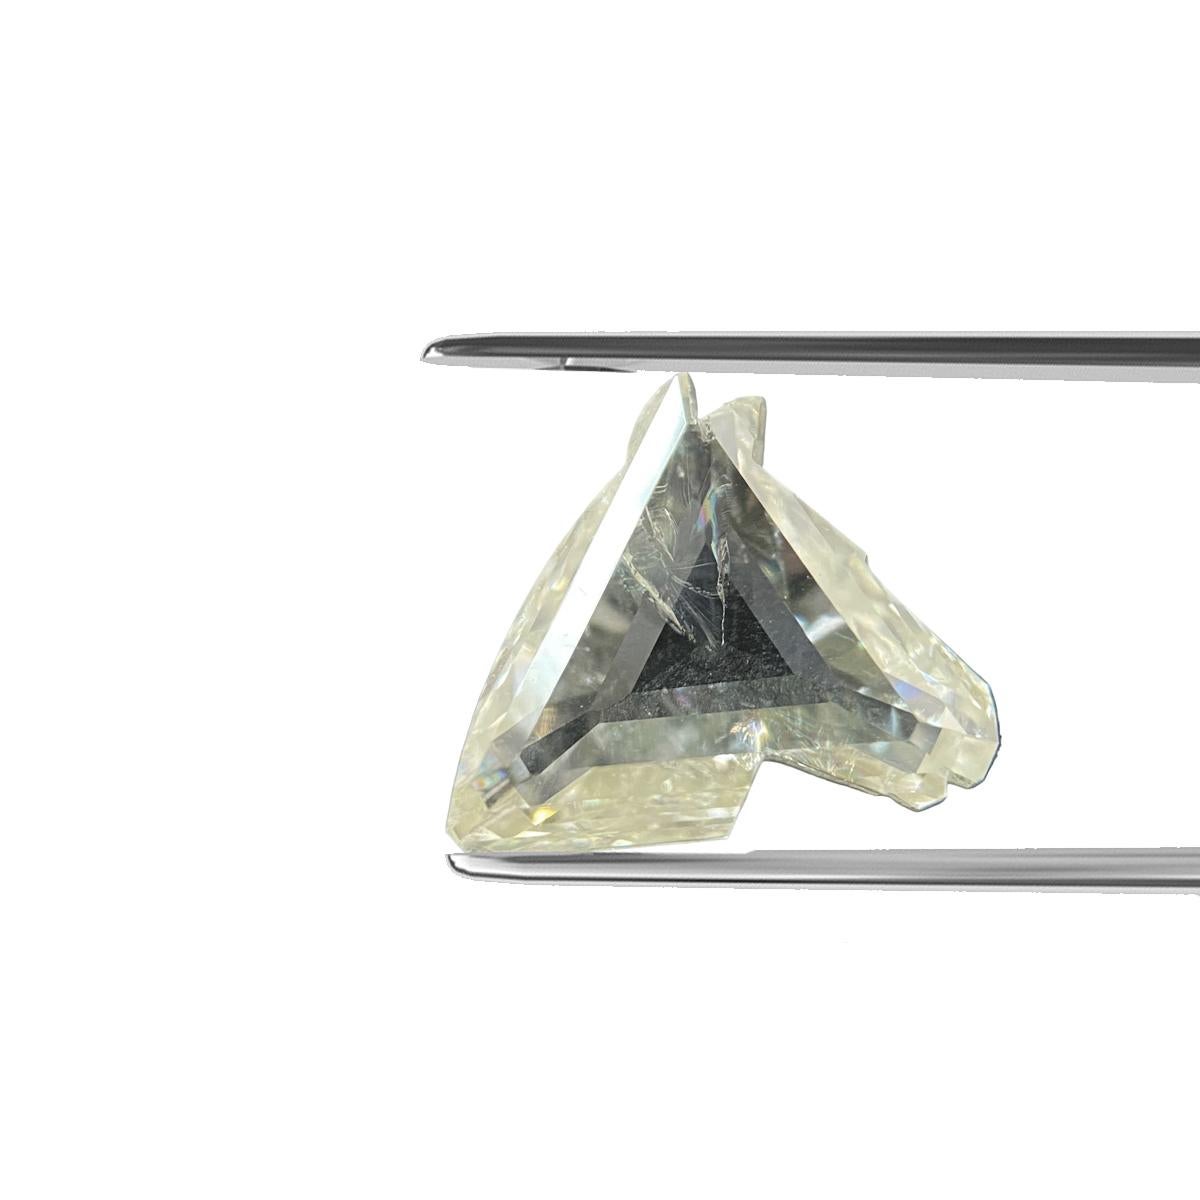 ARTIKELBEZEICHNUNG

ID #: 55814
Steinform:	Pferdekopf-Diamant
Gewicht des Diamanten: 1,72 CT
Klarheit: SI2
Farbe: L
Abmessungen: 8,53 x 8,25 x 2,81 mm
Unser Preis: $5350.00
Schätzungspreis: $8025.00


Diese echten Diamanten werden von unserem